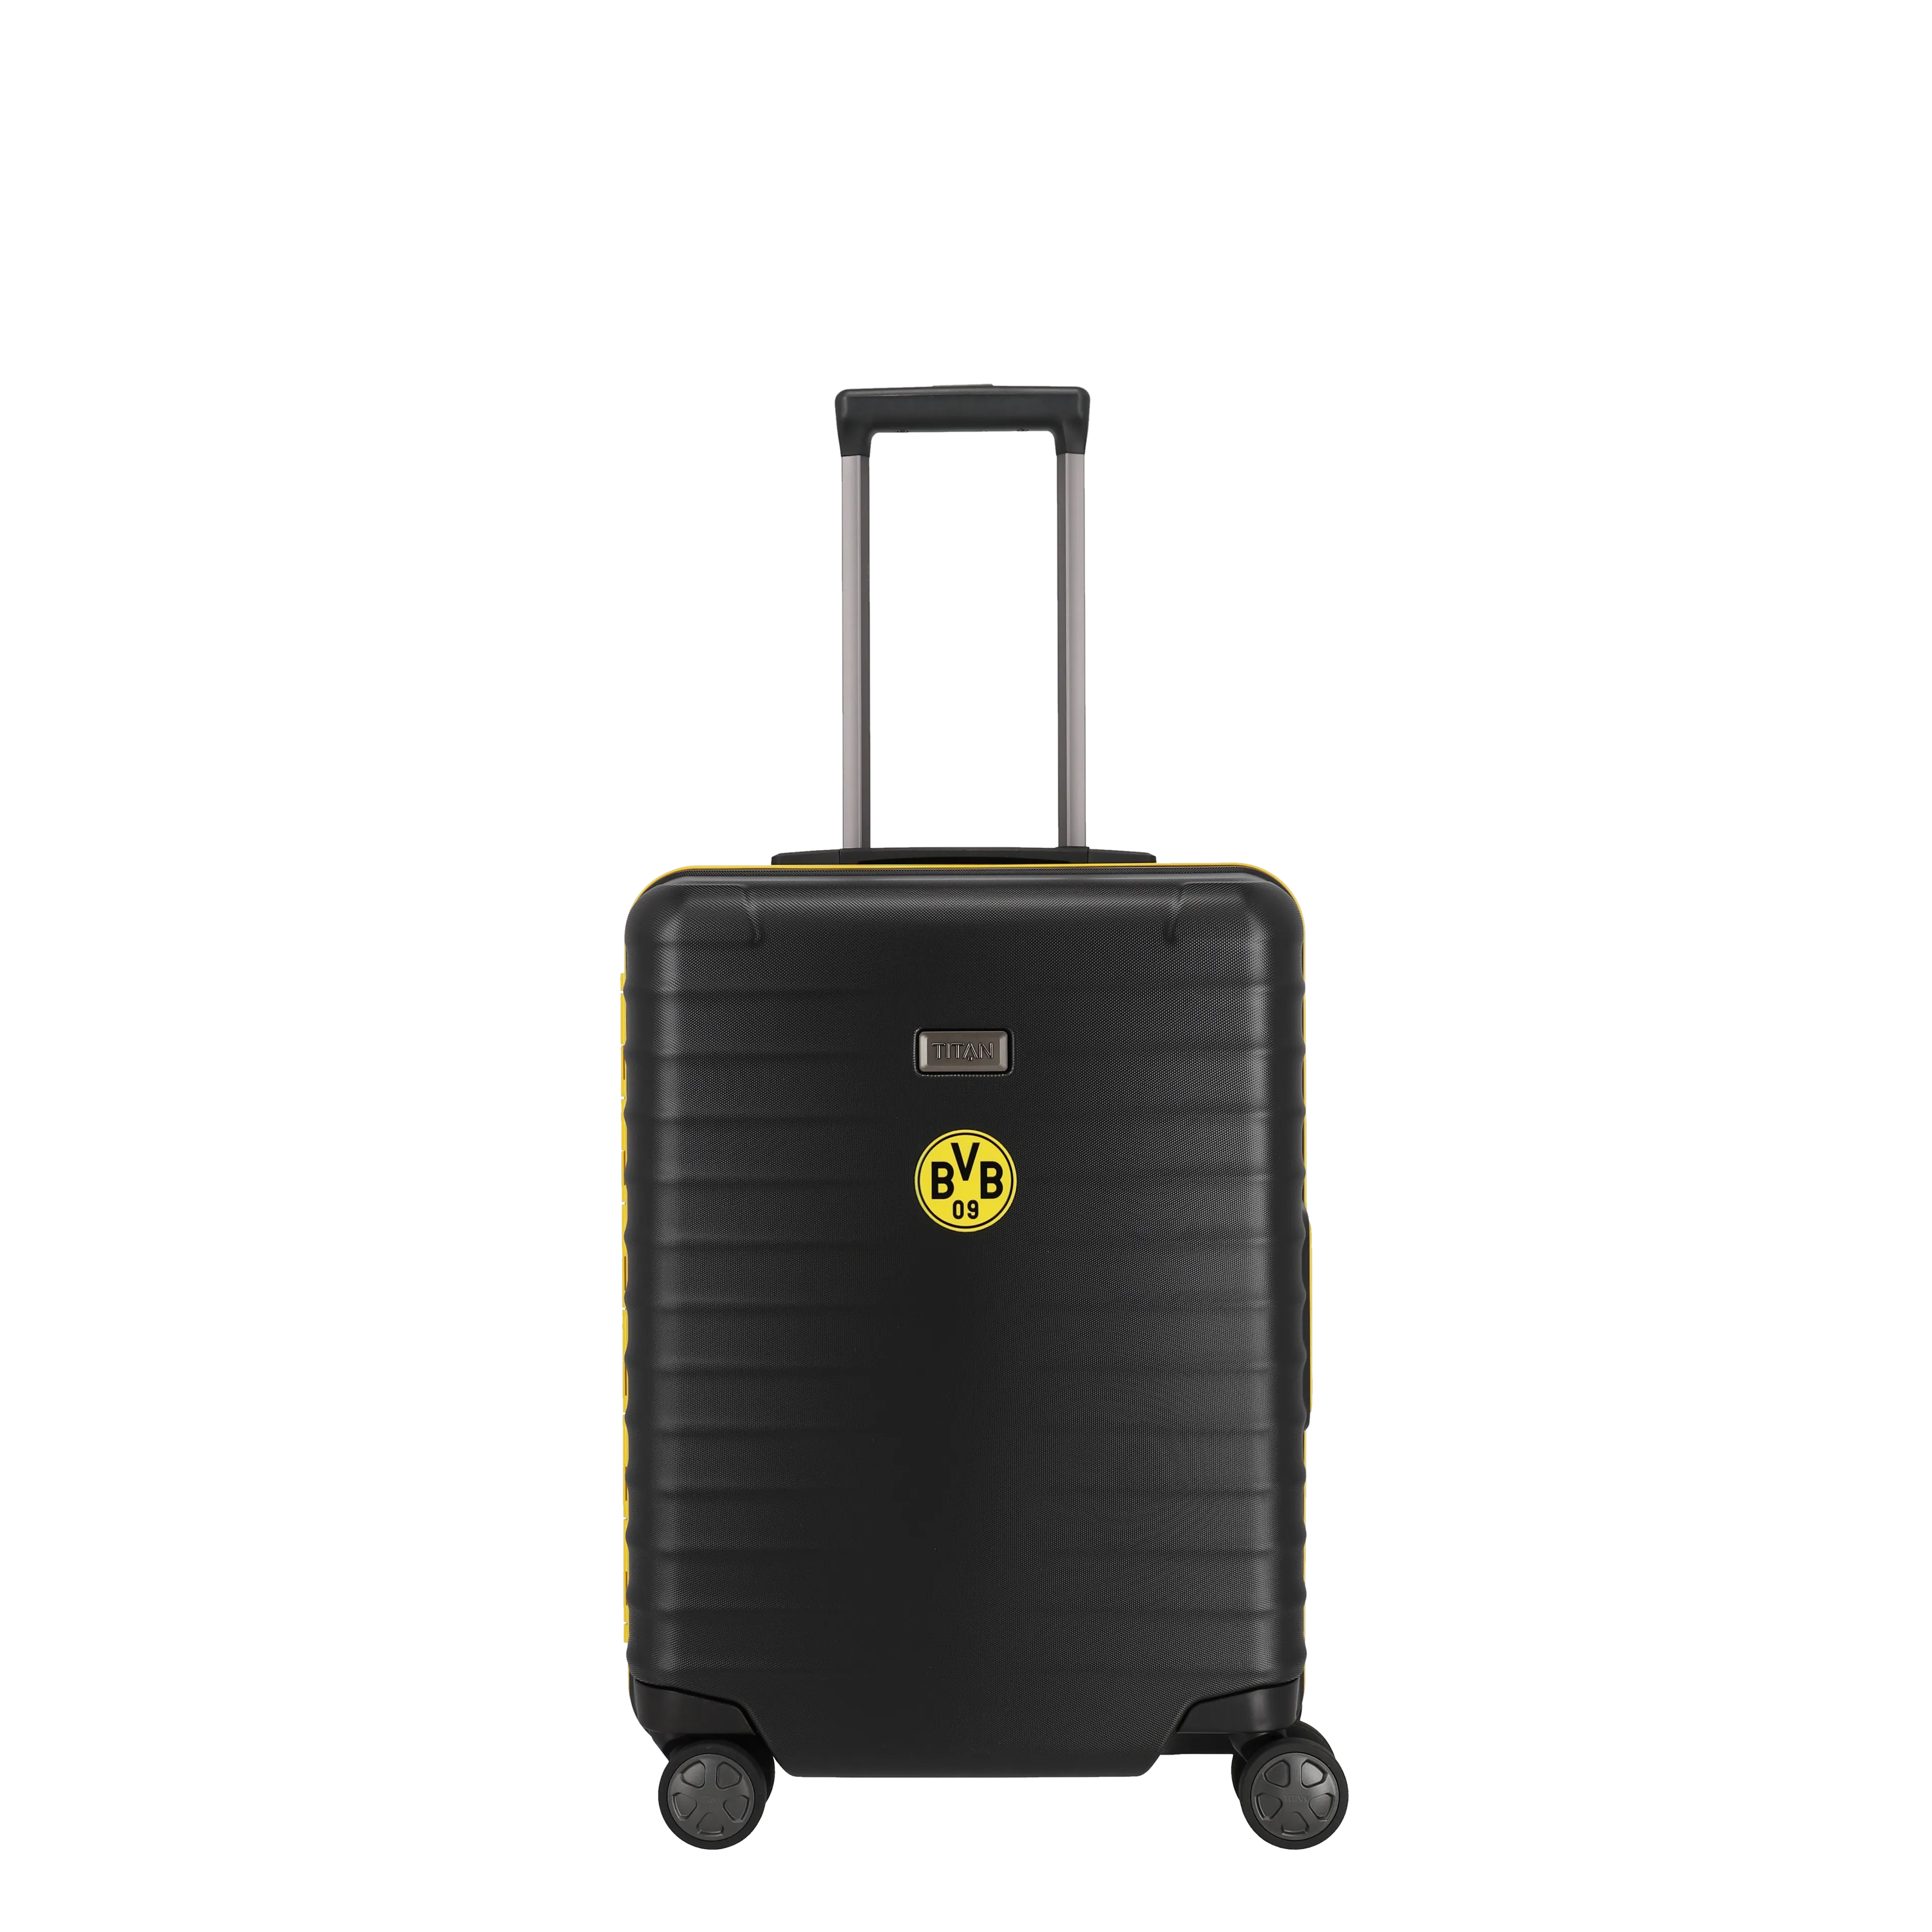 Ein TITAN Koffer der Serie LITRON Frame BVB Edition Frontansicht in schwarz/gelb Größe S 55cm